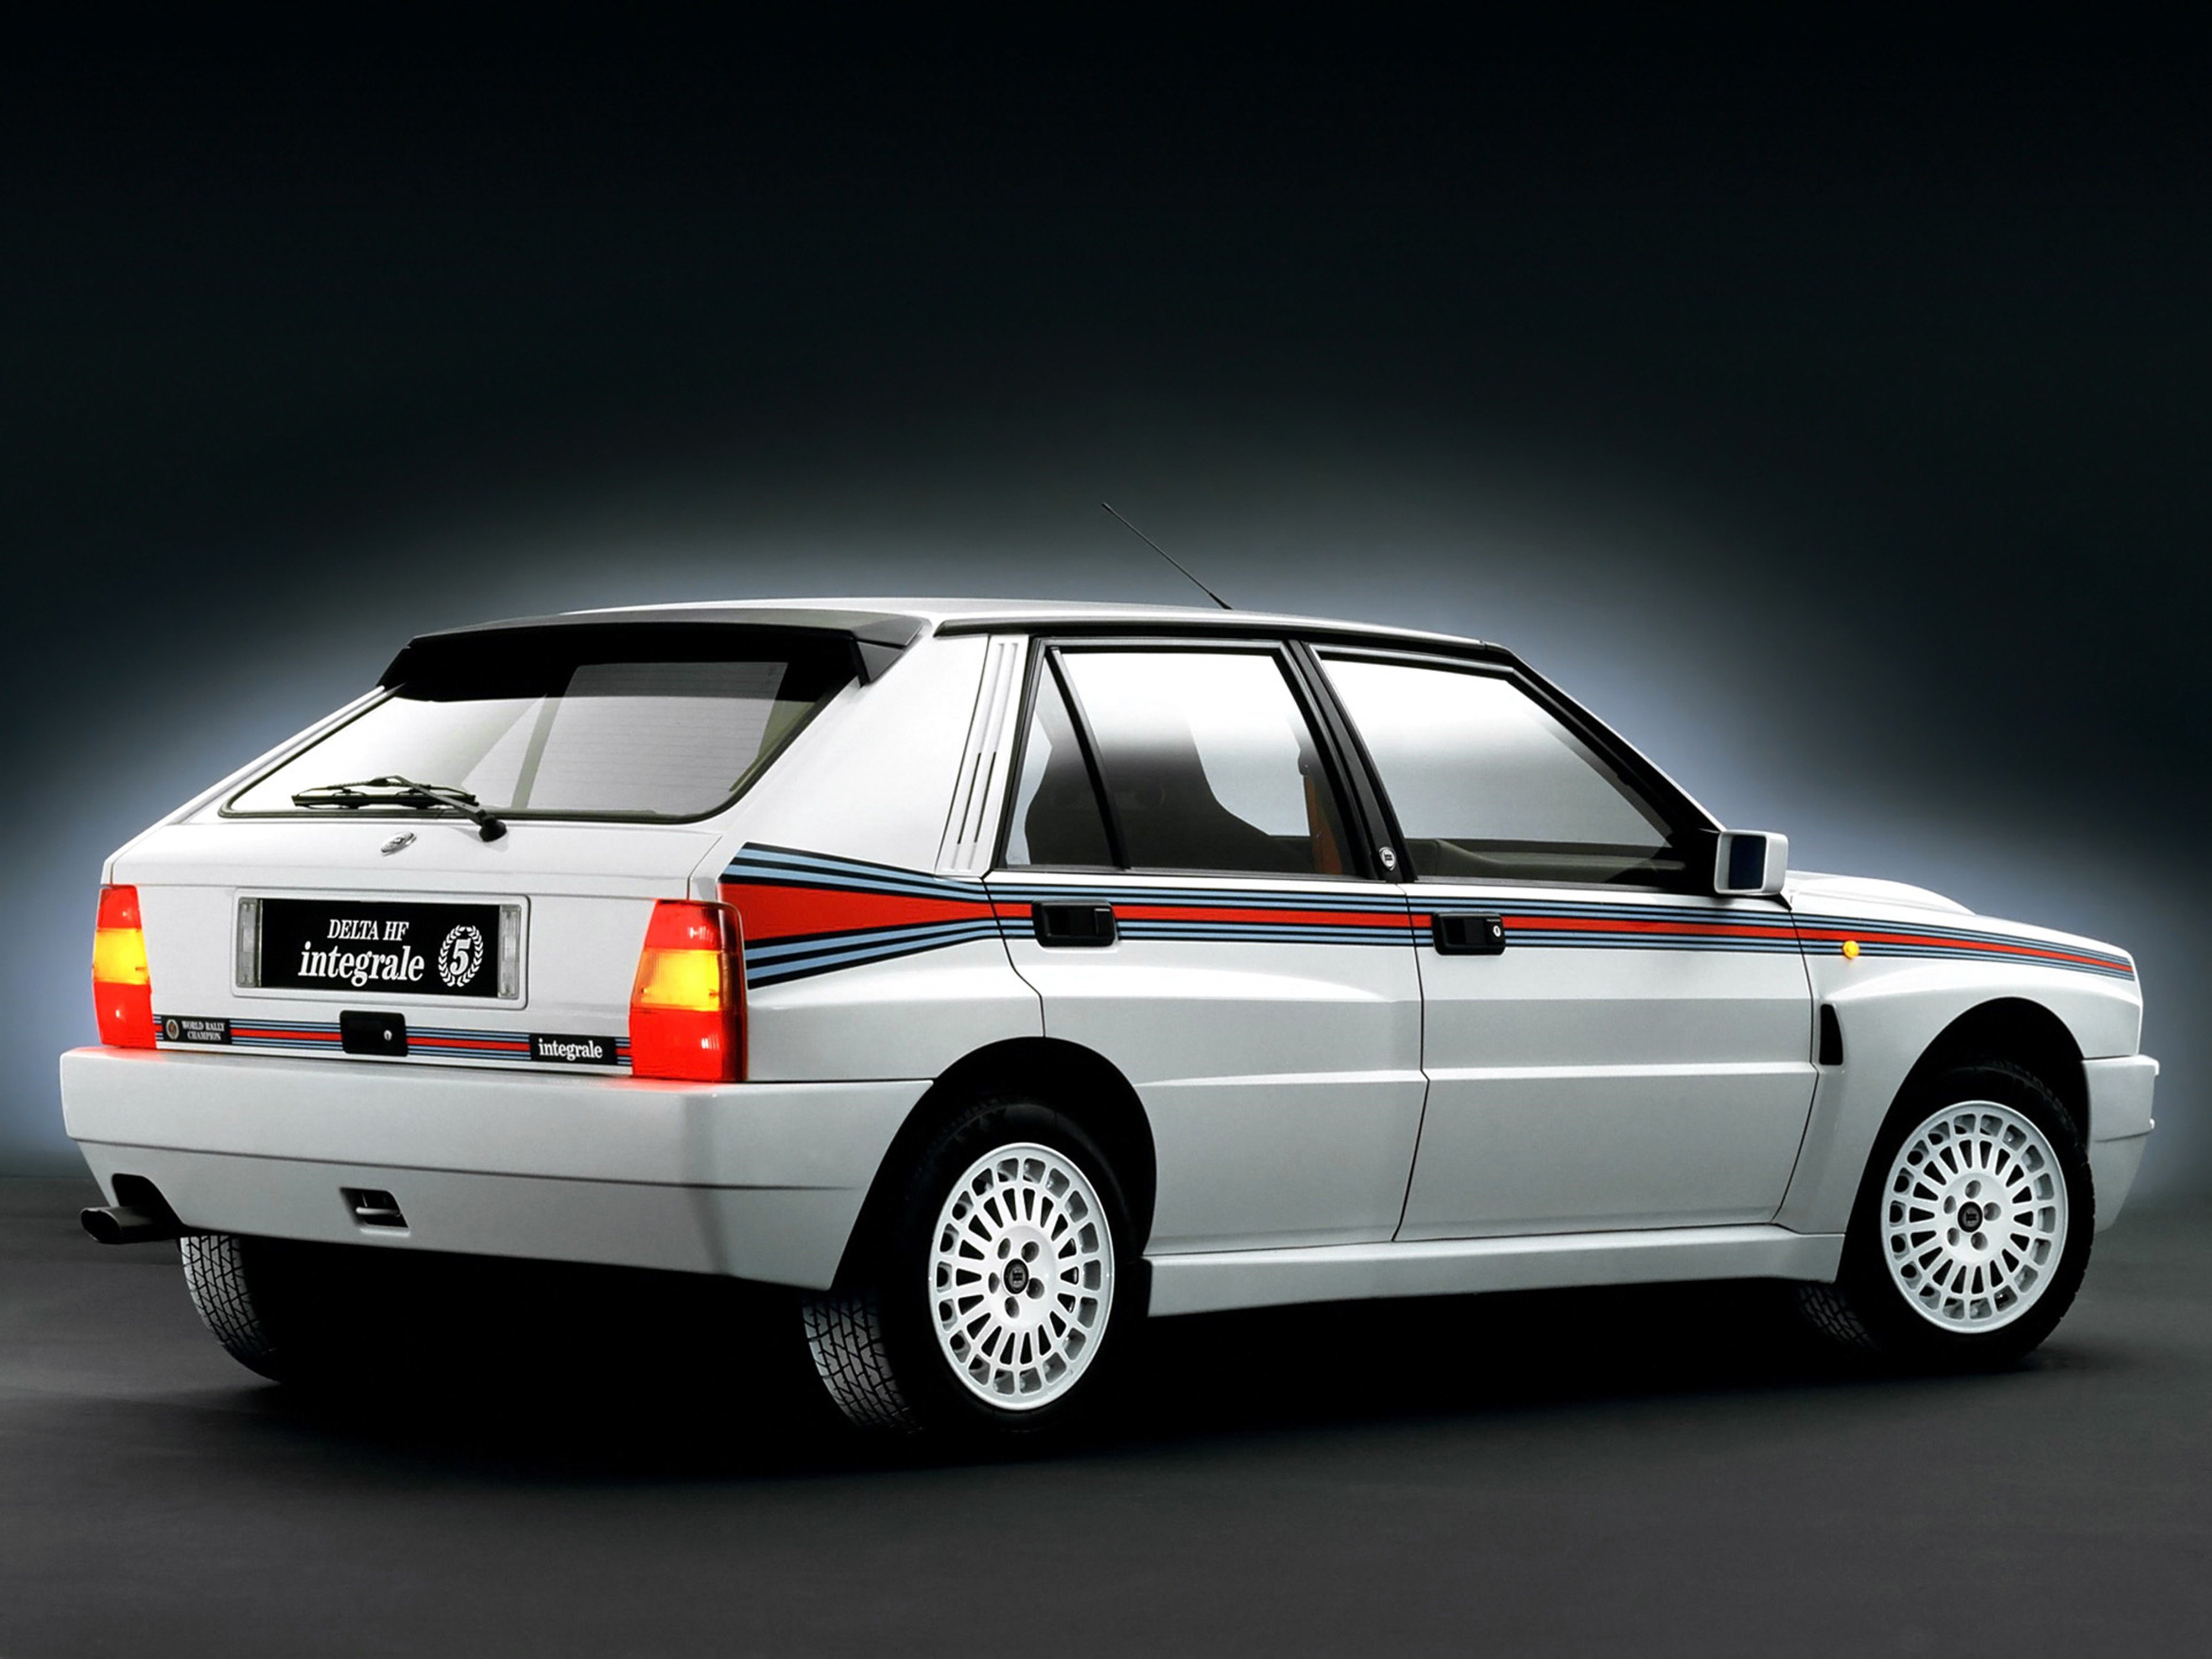 1992, Lancia, Delta hf, Integrale, Evoluzione, Car, Italy, Martini, 4000x3000 Wallpaper